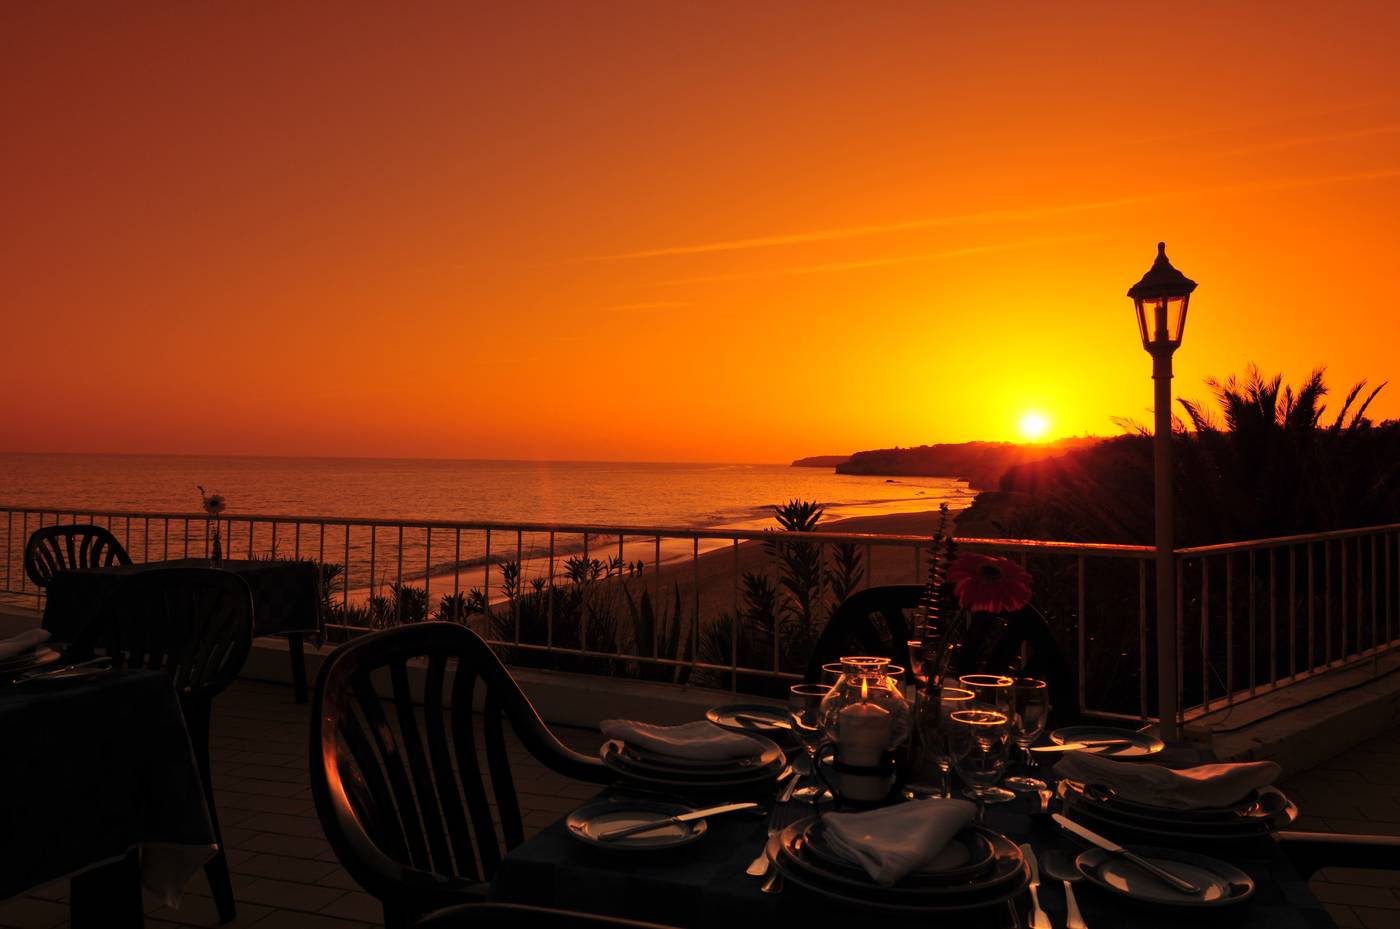 Holiday Inn Algarve in Costa de Algarve, Portugal